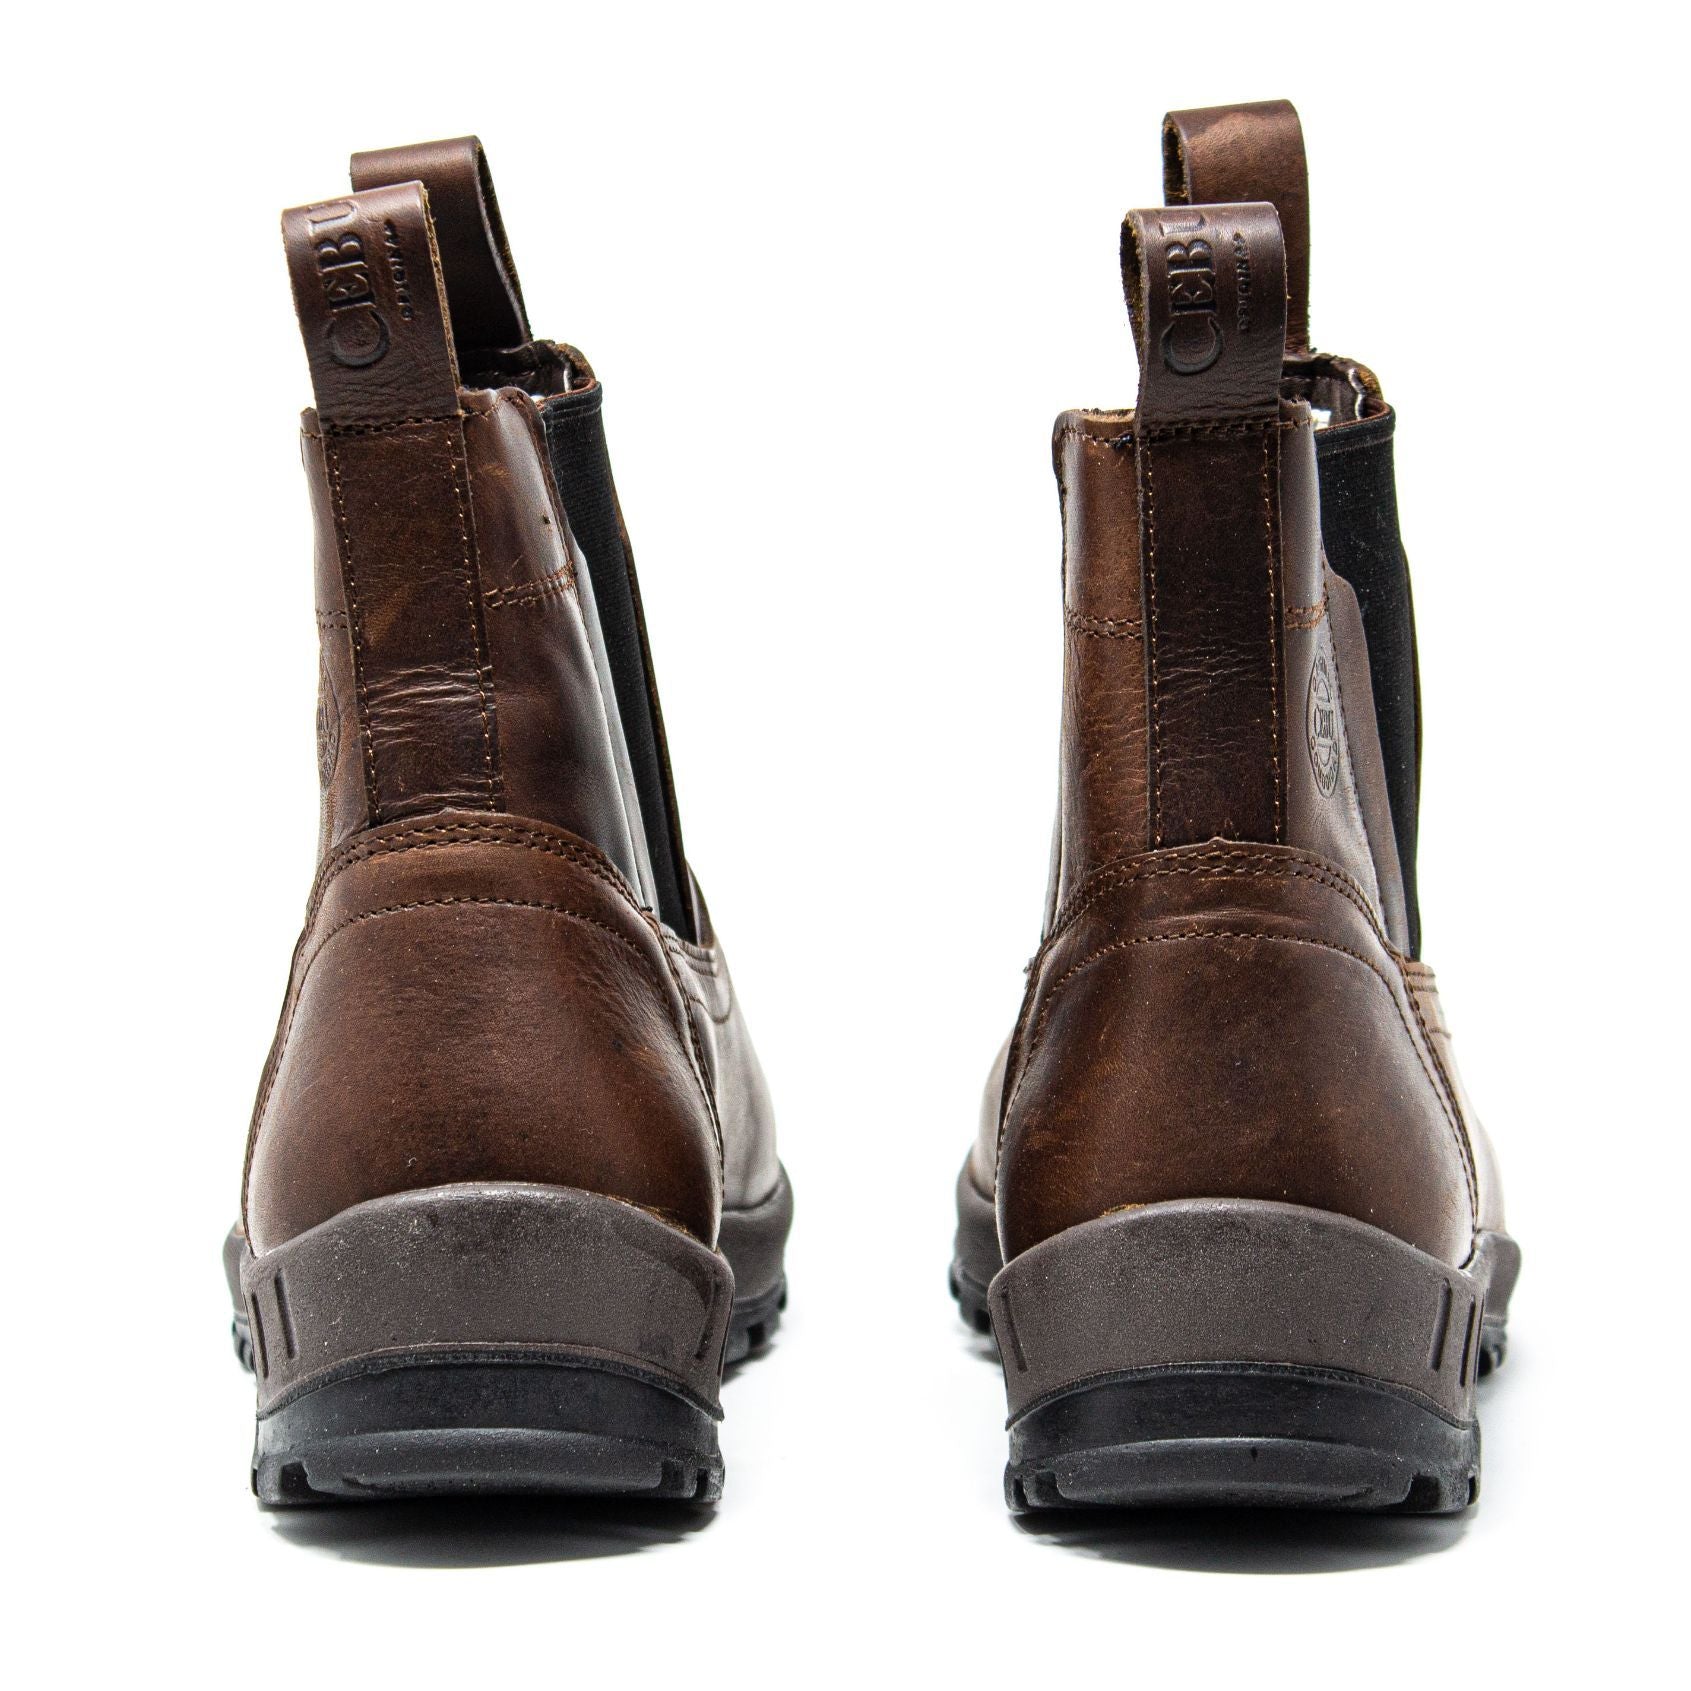 Men's Work Boots - Slip On & Lightweight - Brown Work Boots - Cebu - Slip On Work Boots - Brown Ankle Work Boots